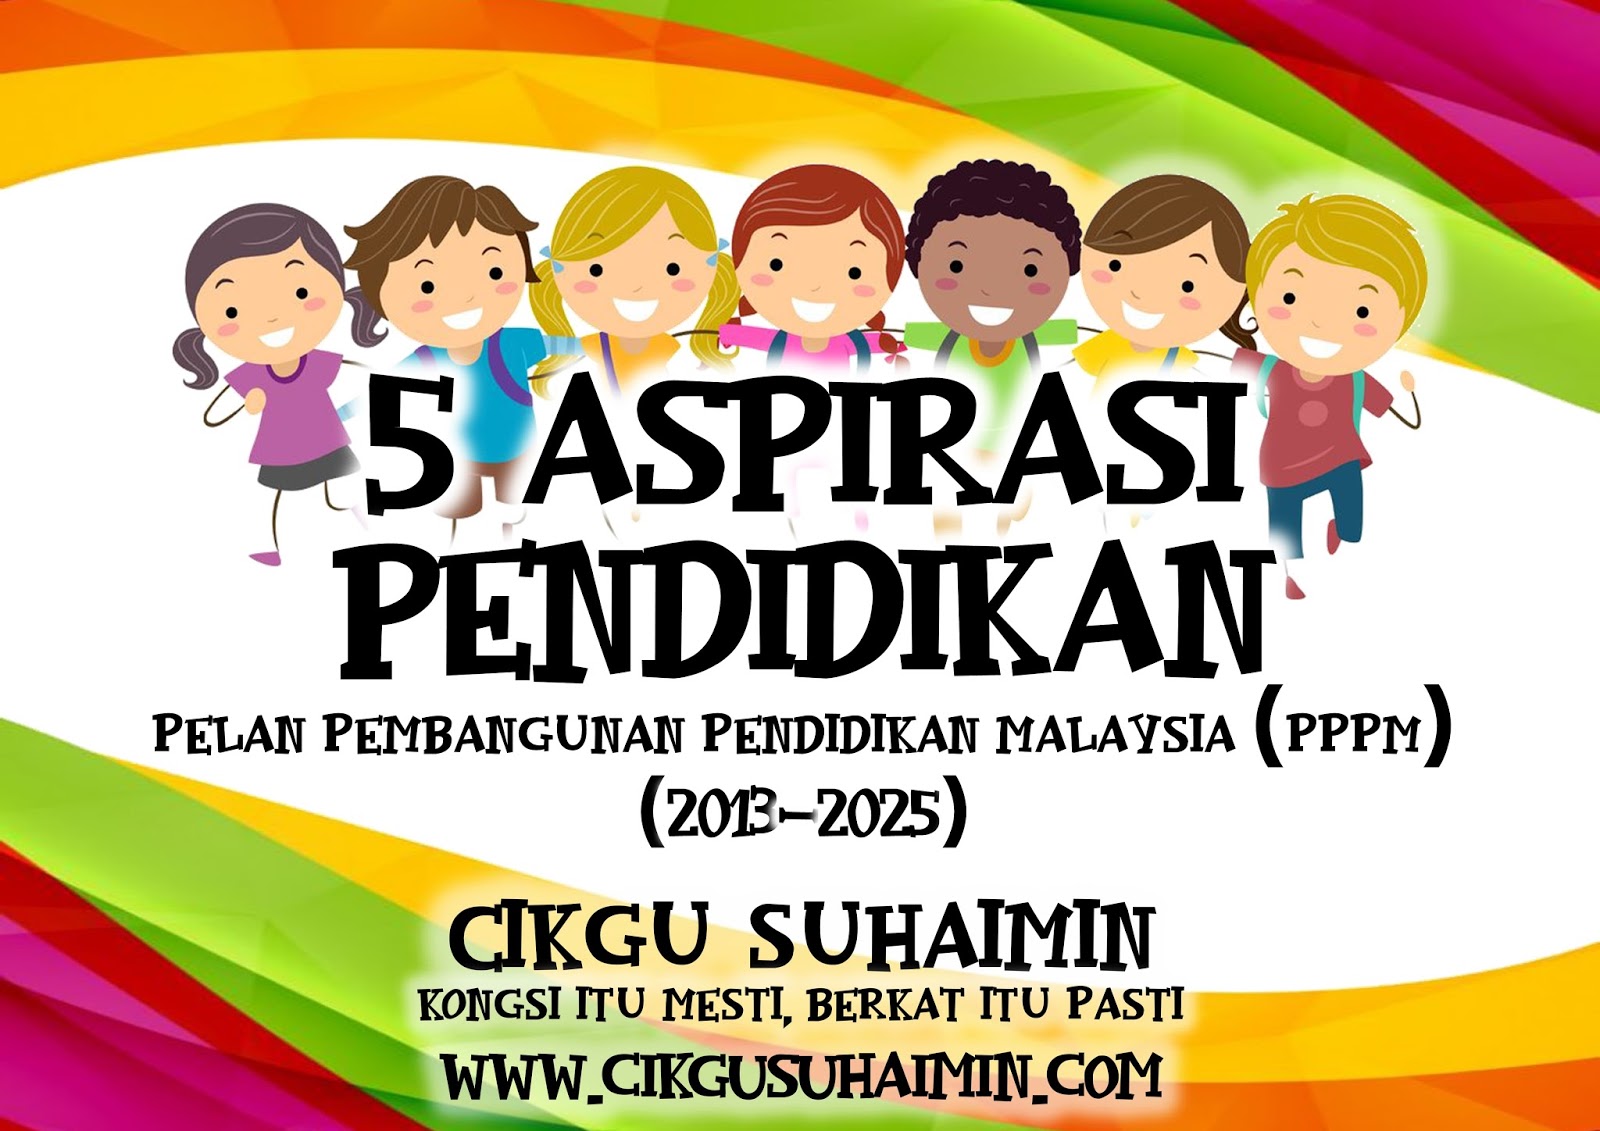 5 Aspirasi Pendidikan Dalam Pelan Pembangunan Pendidikan Malaysia Pppm 2013 2025